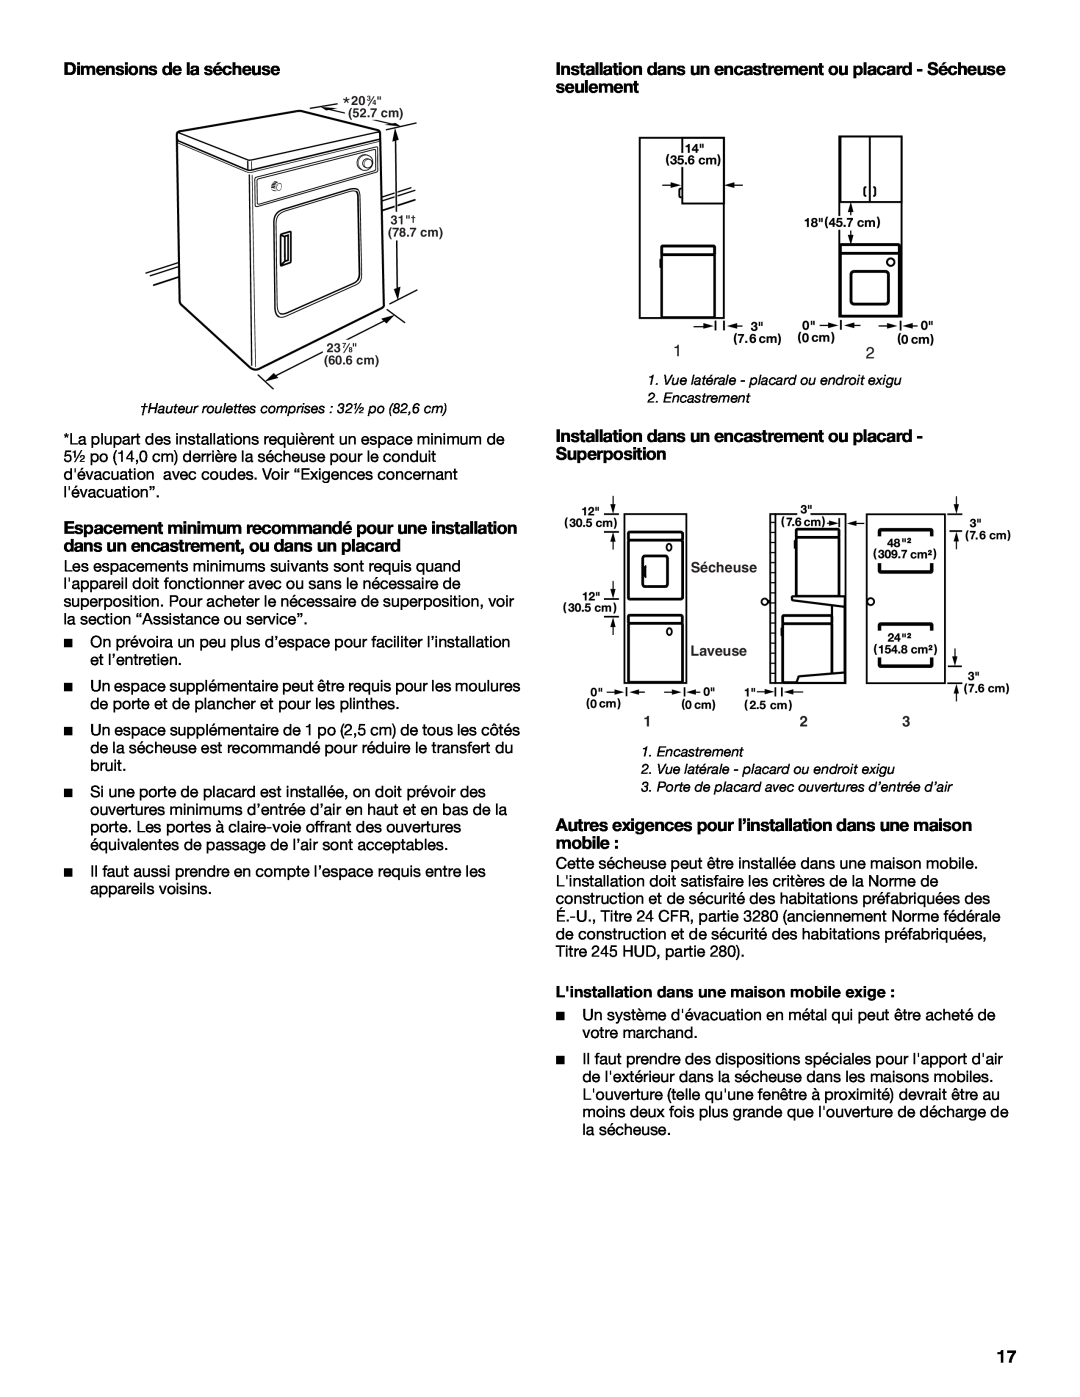 Whirlpool 3406879 manual Dimensions de la sécheuse, Installation dans un encastrement ou placard - Sécheuse seulement 